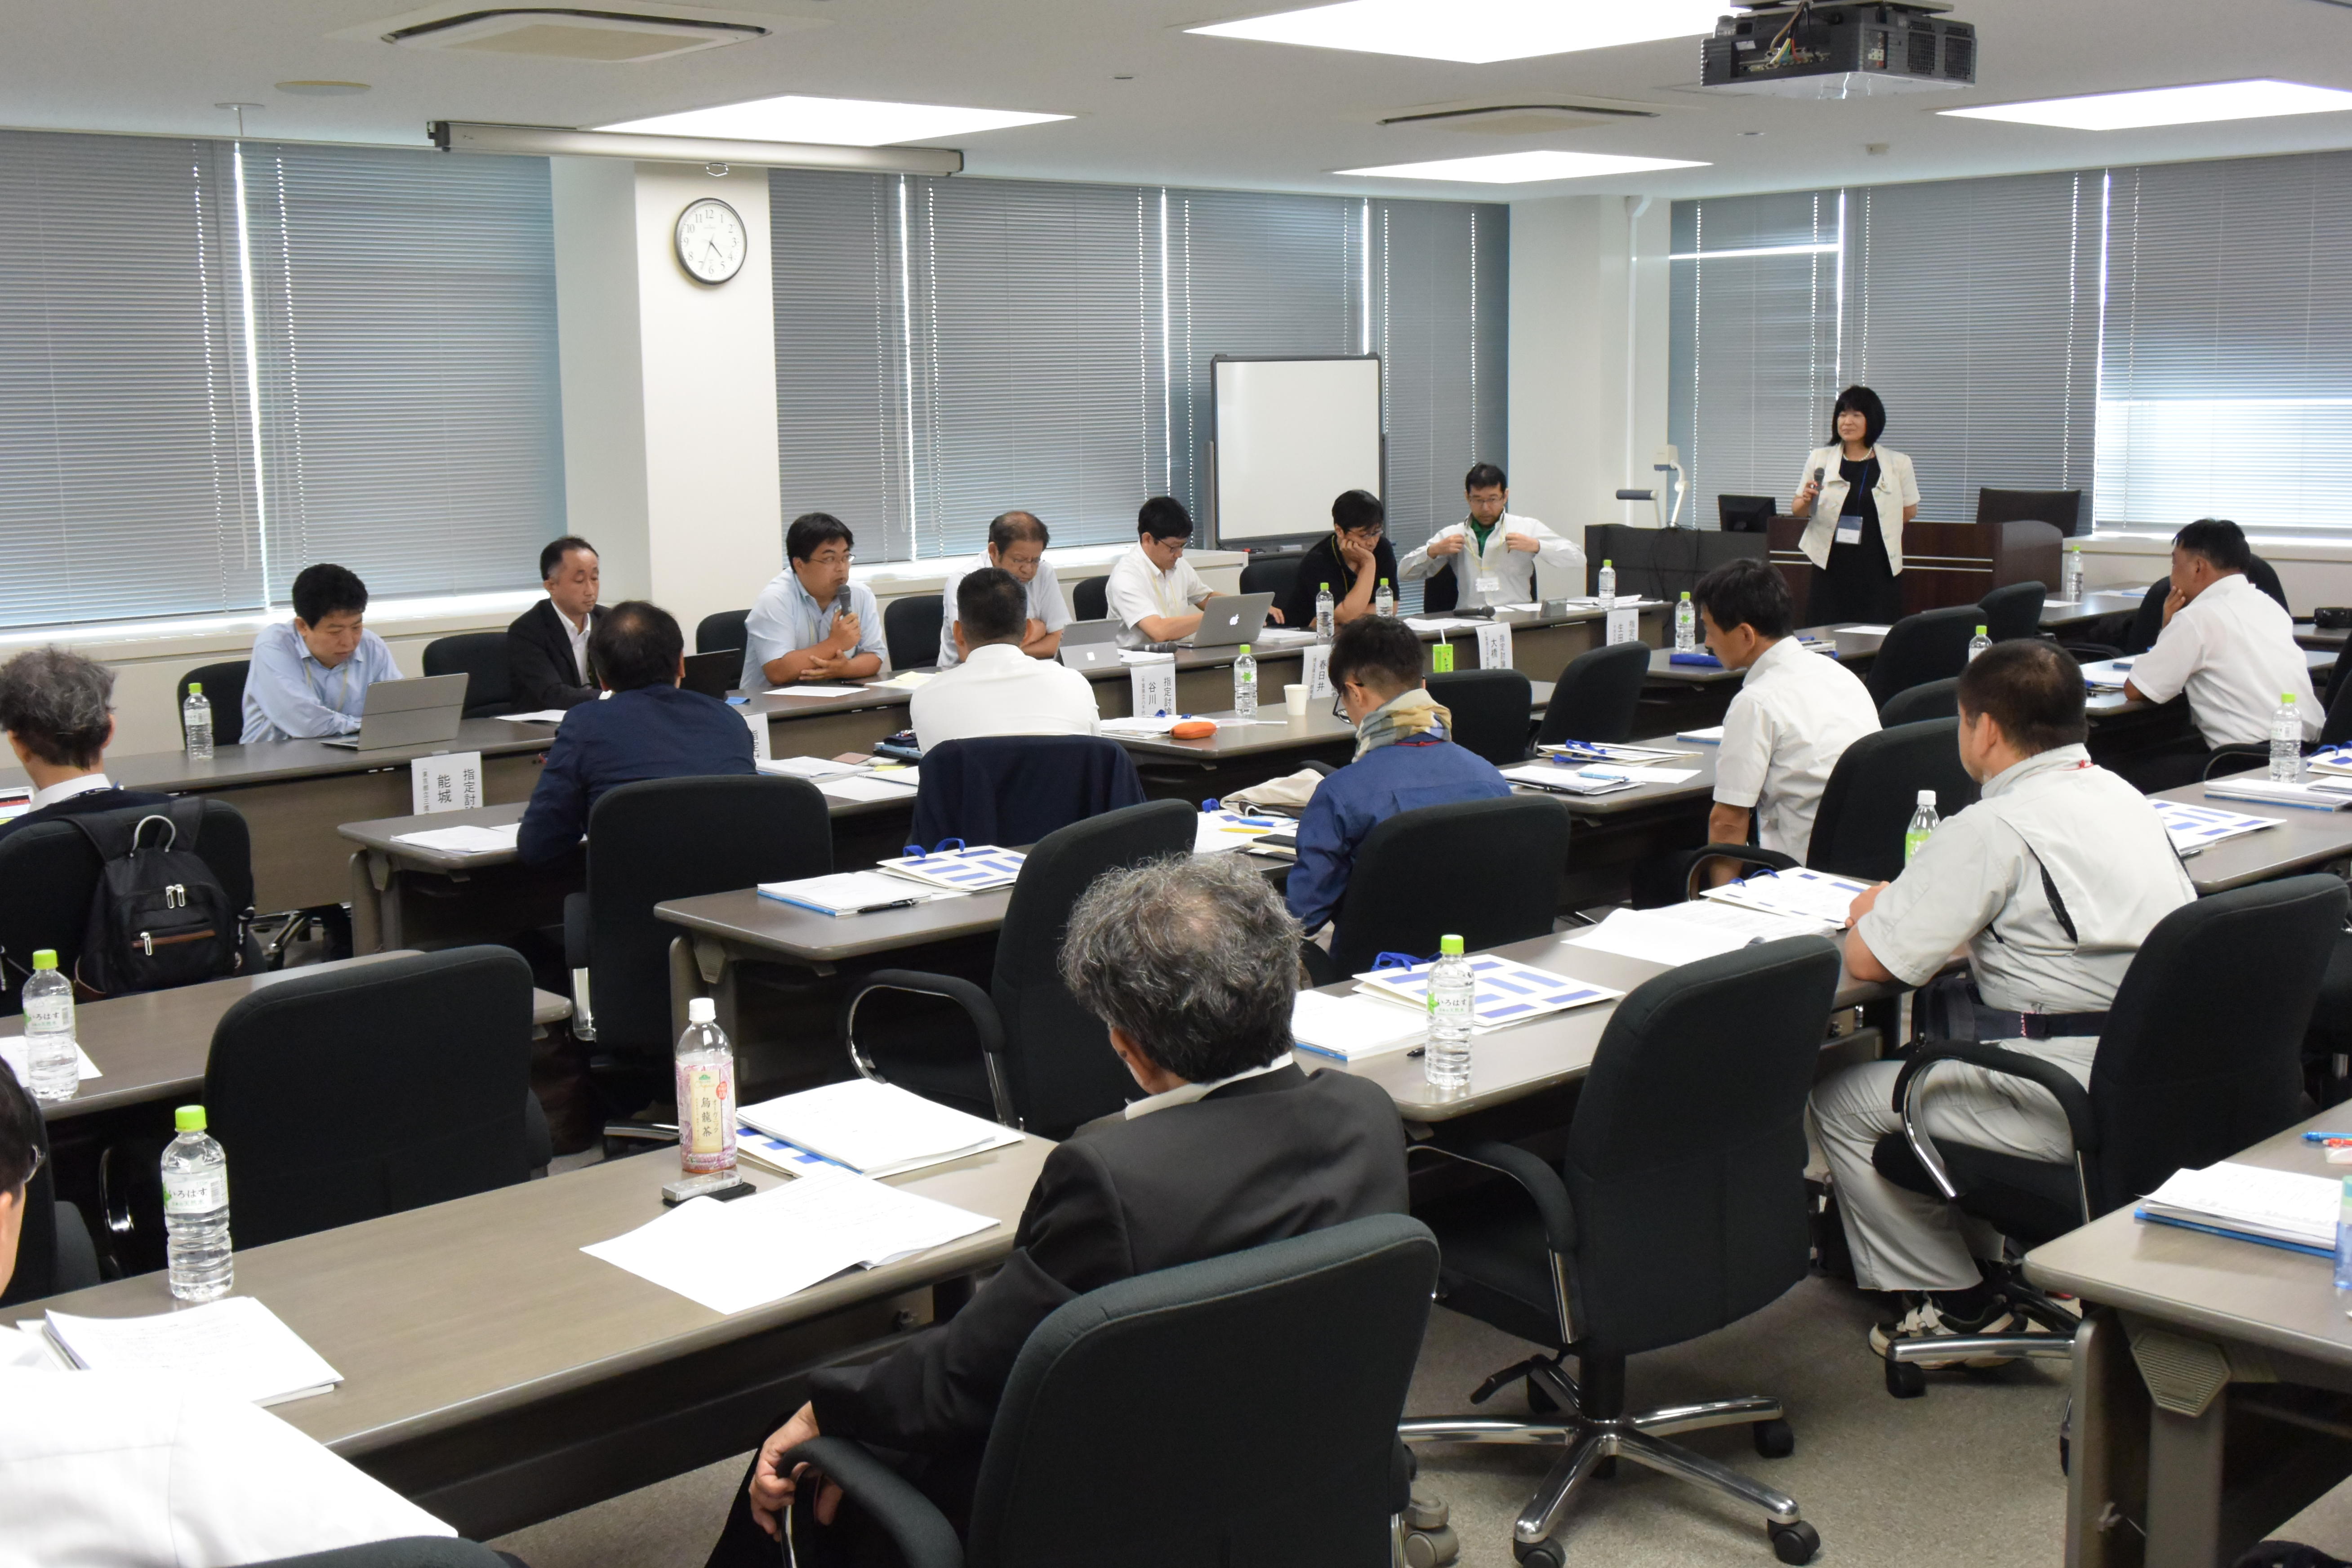 江戸川大学が首都圏の情報教育の拠点に -- 関東各地の中高の教員が参加した「情報教育研究会」が大盛況のうちに終了